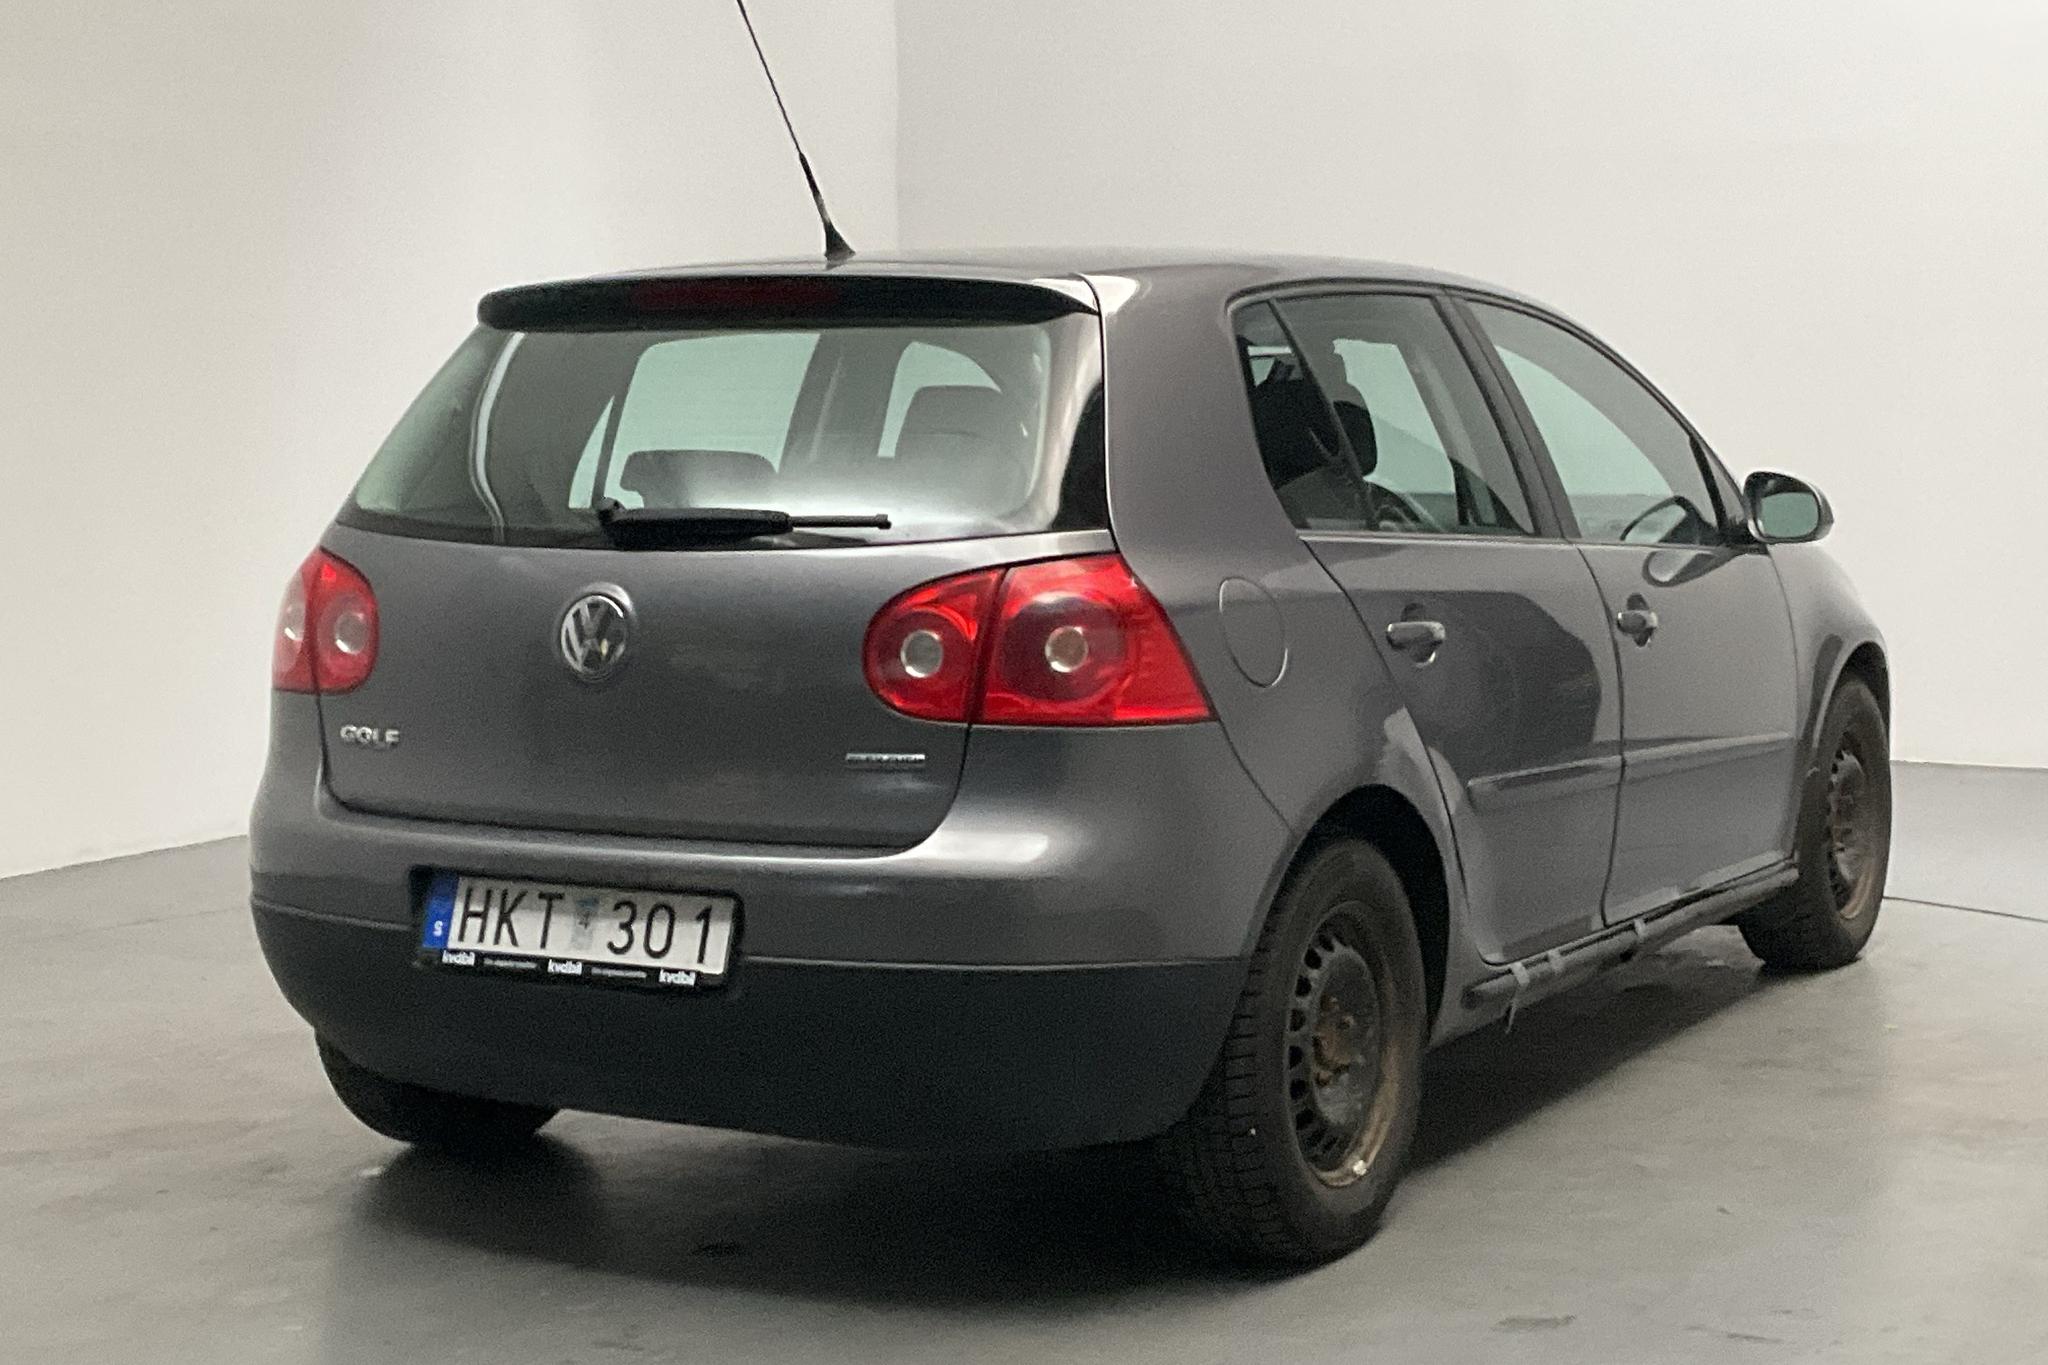 VW Golf A5 1.6 MultiFuel E85 5dr (102hk) - 12 265 mil - Manuell - Dark Grey - 2008